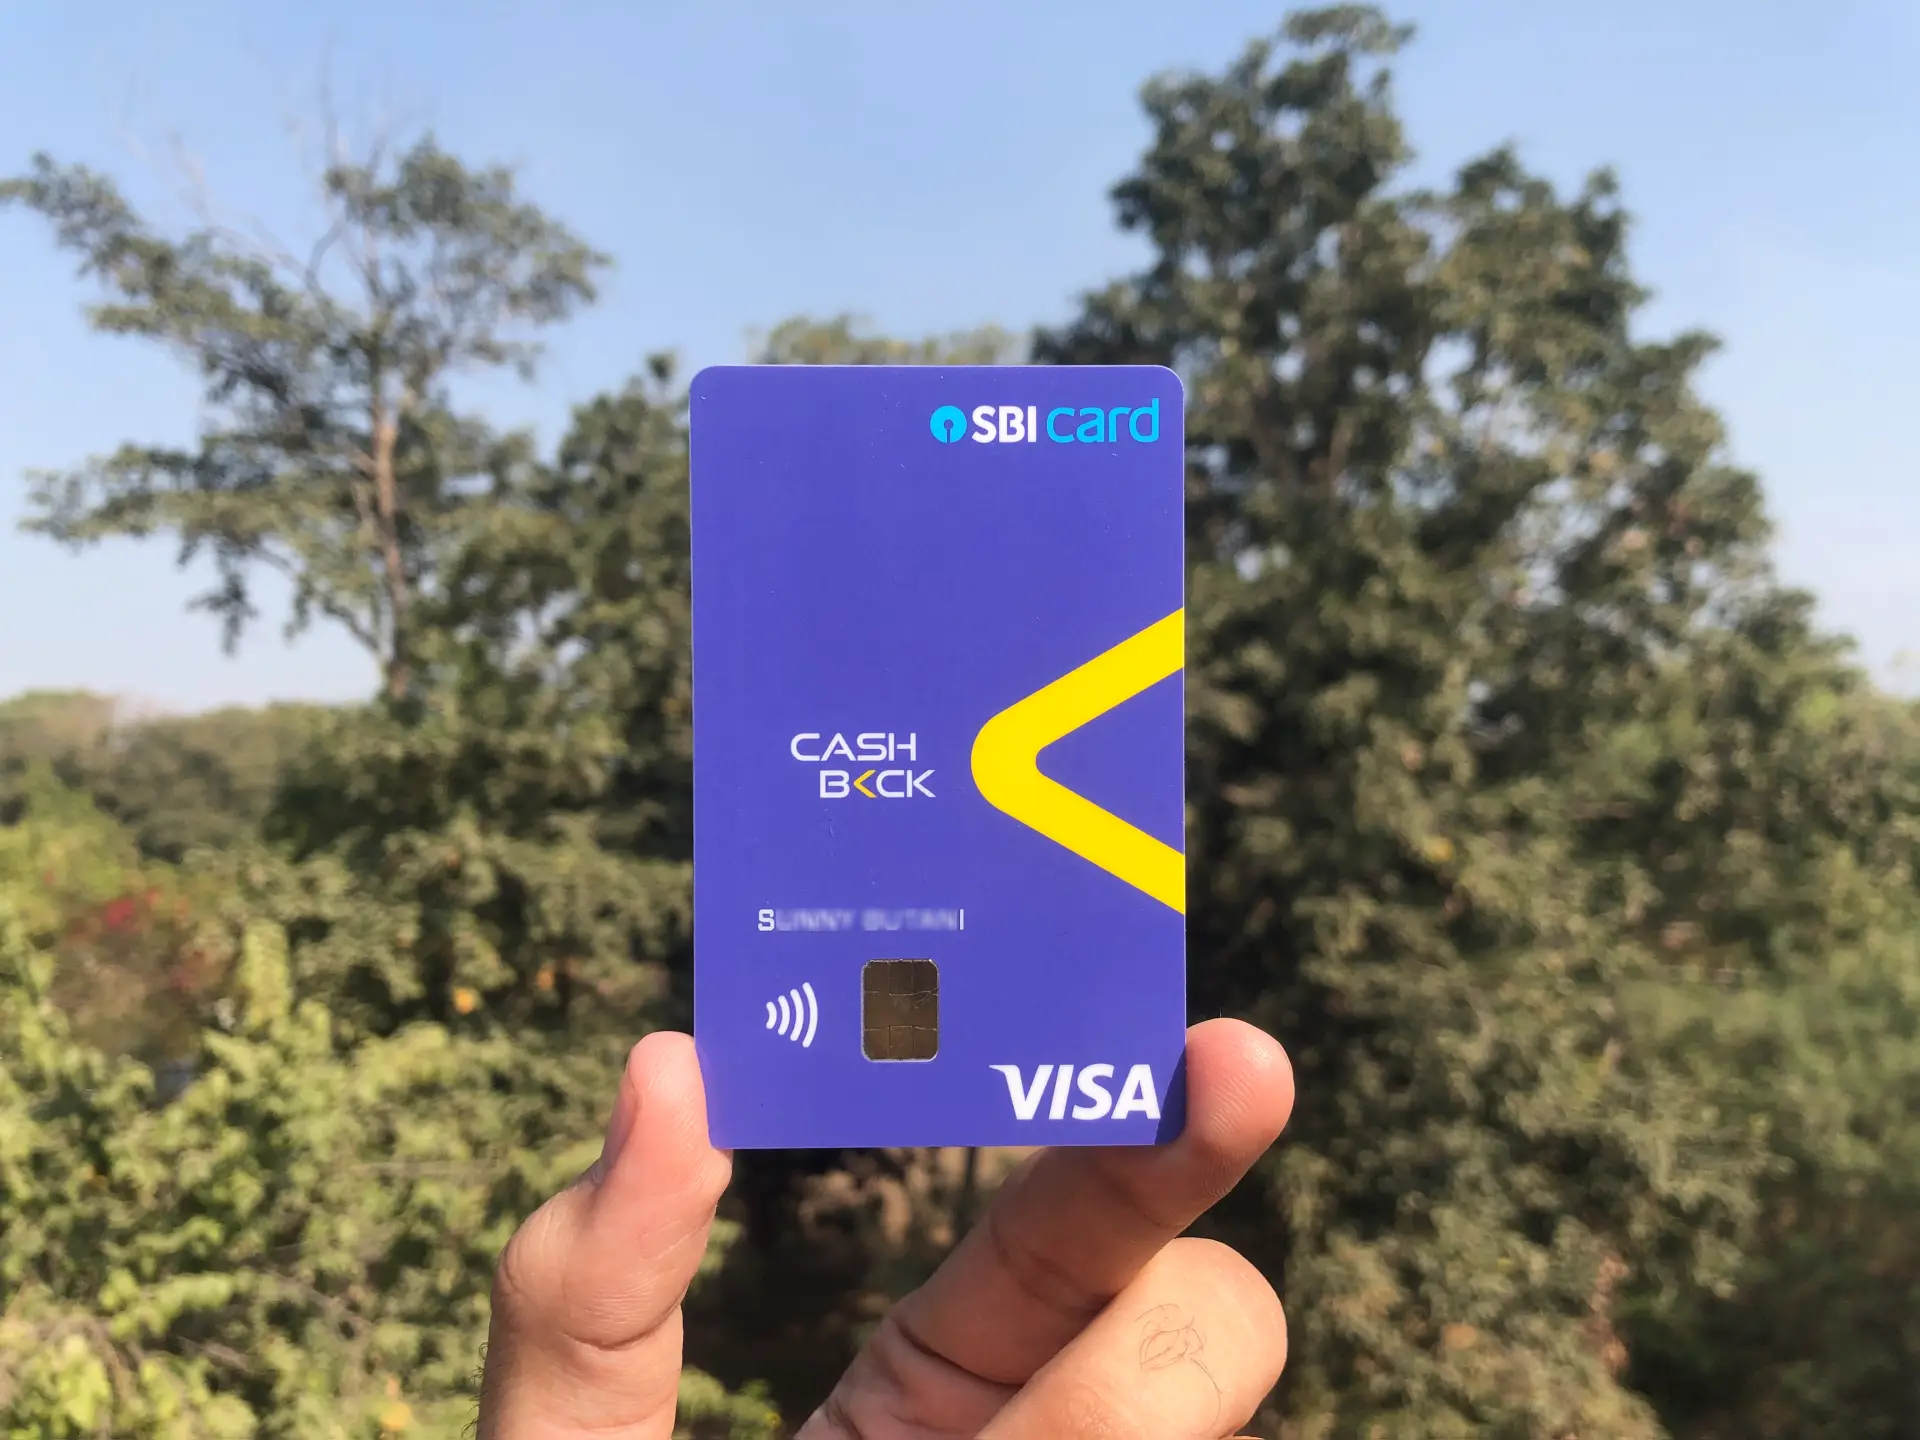 cashback sbi card scheme 5 percent online offline shopping offers business marathi news  Cashback SBI Card  : ऑनलाईन किंवा ऑफलाईन खरेदी करताना ऑफरच्या शोधात आहात? 'कॅशबॅक SBI कार्ड'वर मिळतेय 5 टक्के कॅशबॅक 